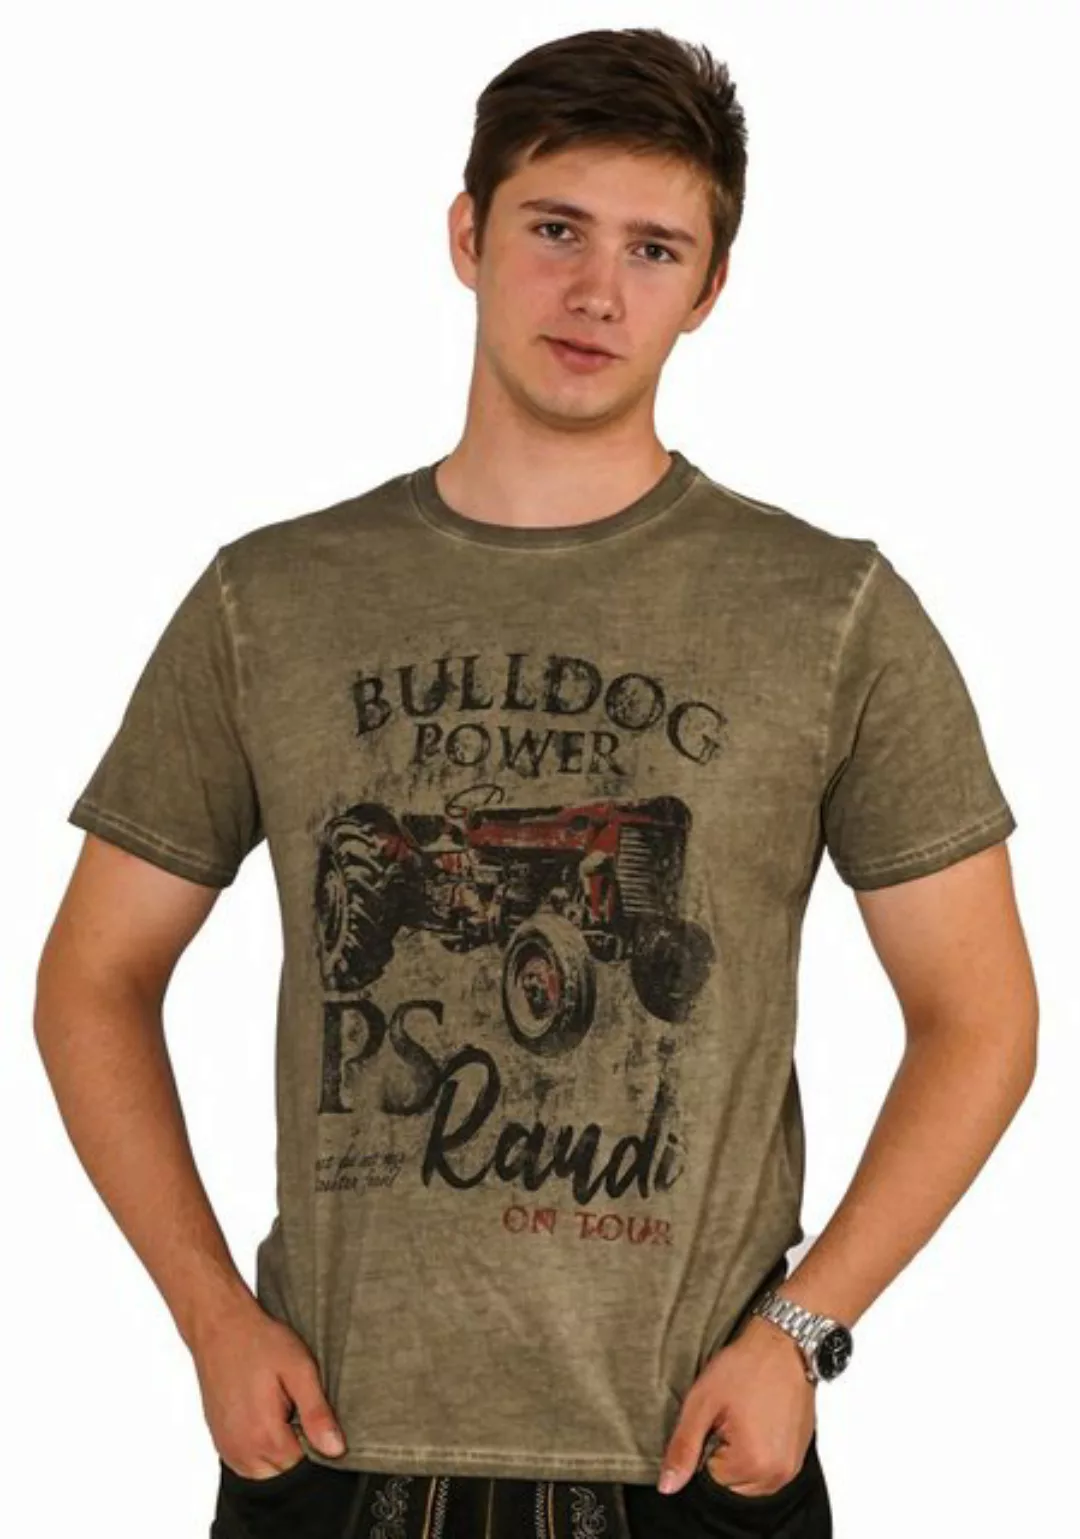 Soreso® Trachtenshirt Bulldog Power PS Raudi on Tour günstig online kaufen